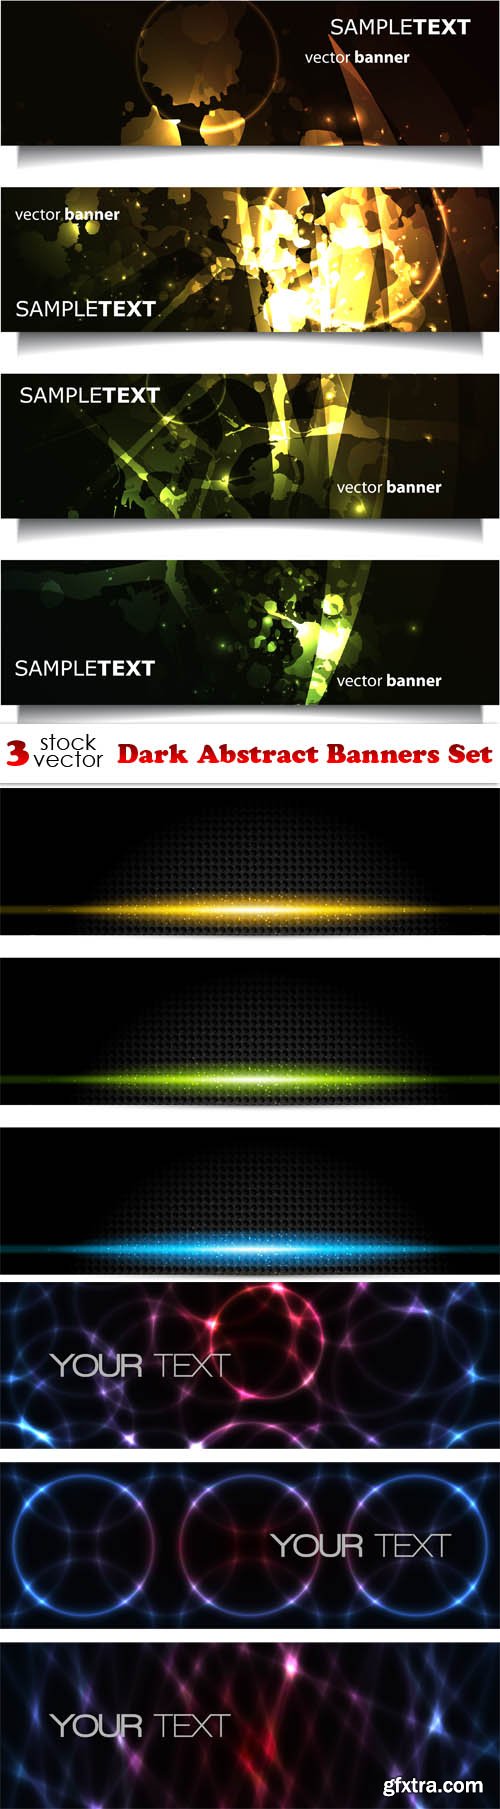 Vectors - Dark Abstract Banners Set